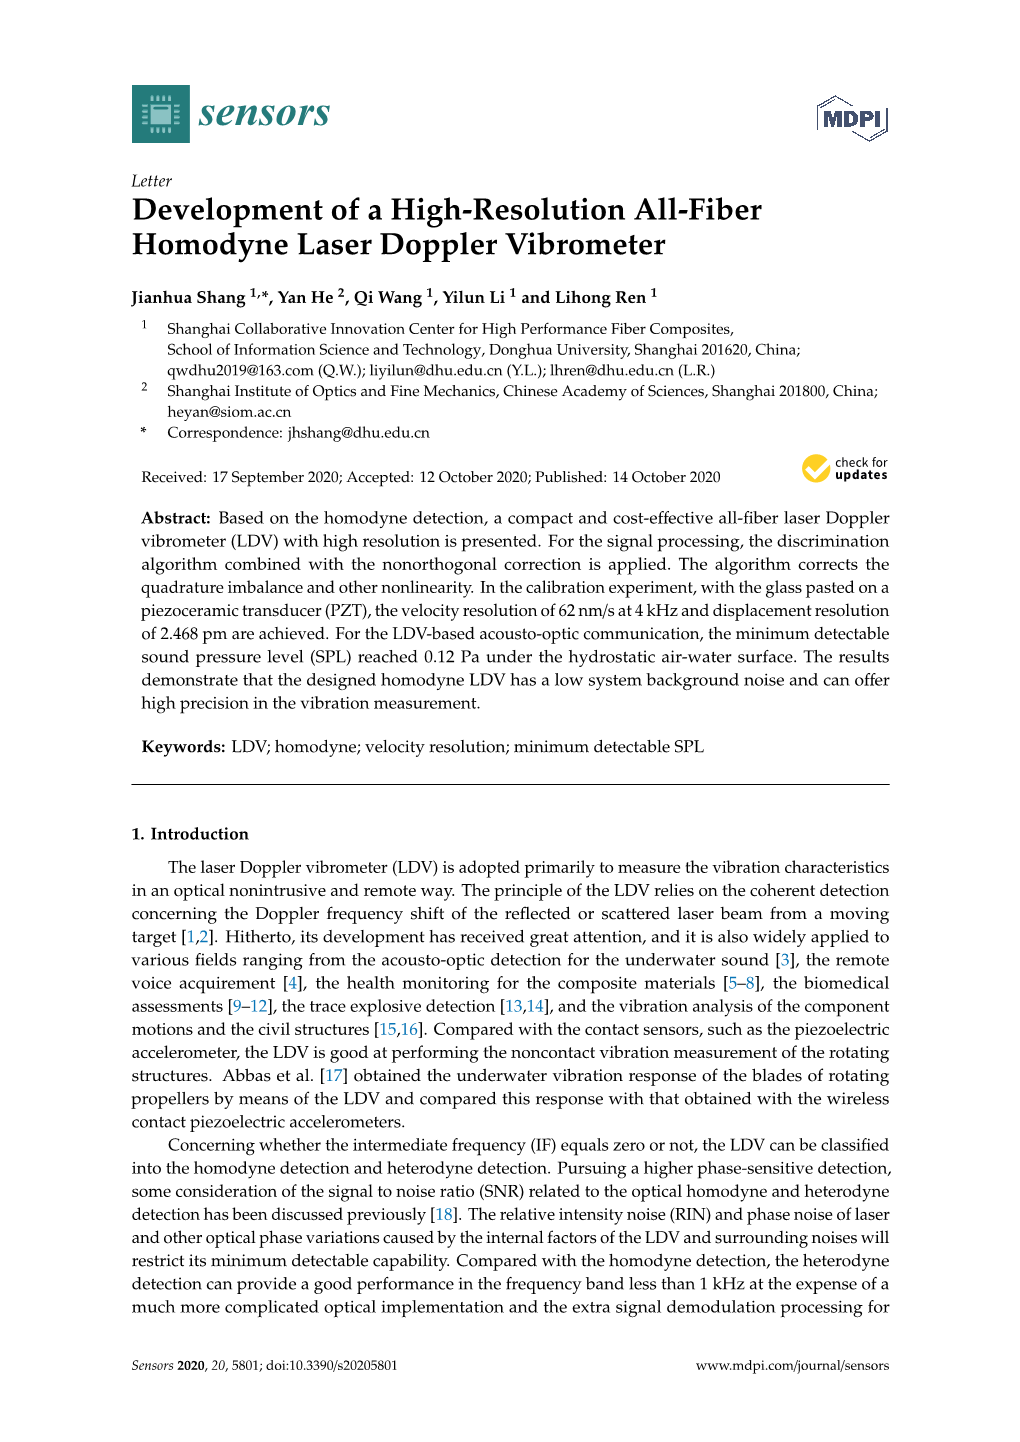 Development of a High-Resolution All-Fiber Homodyne Laser Doppler Vibrometer